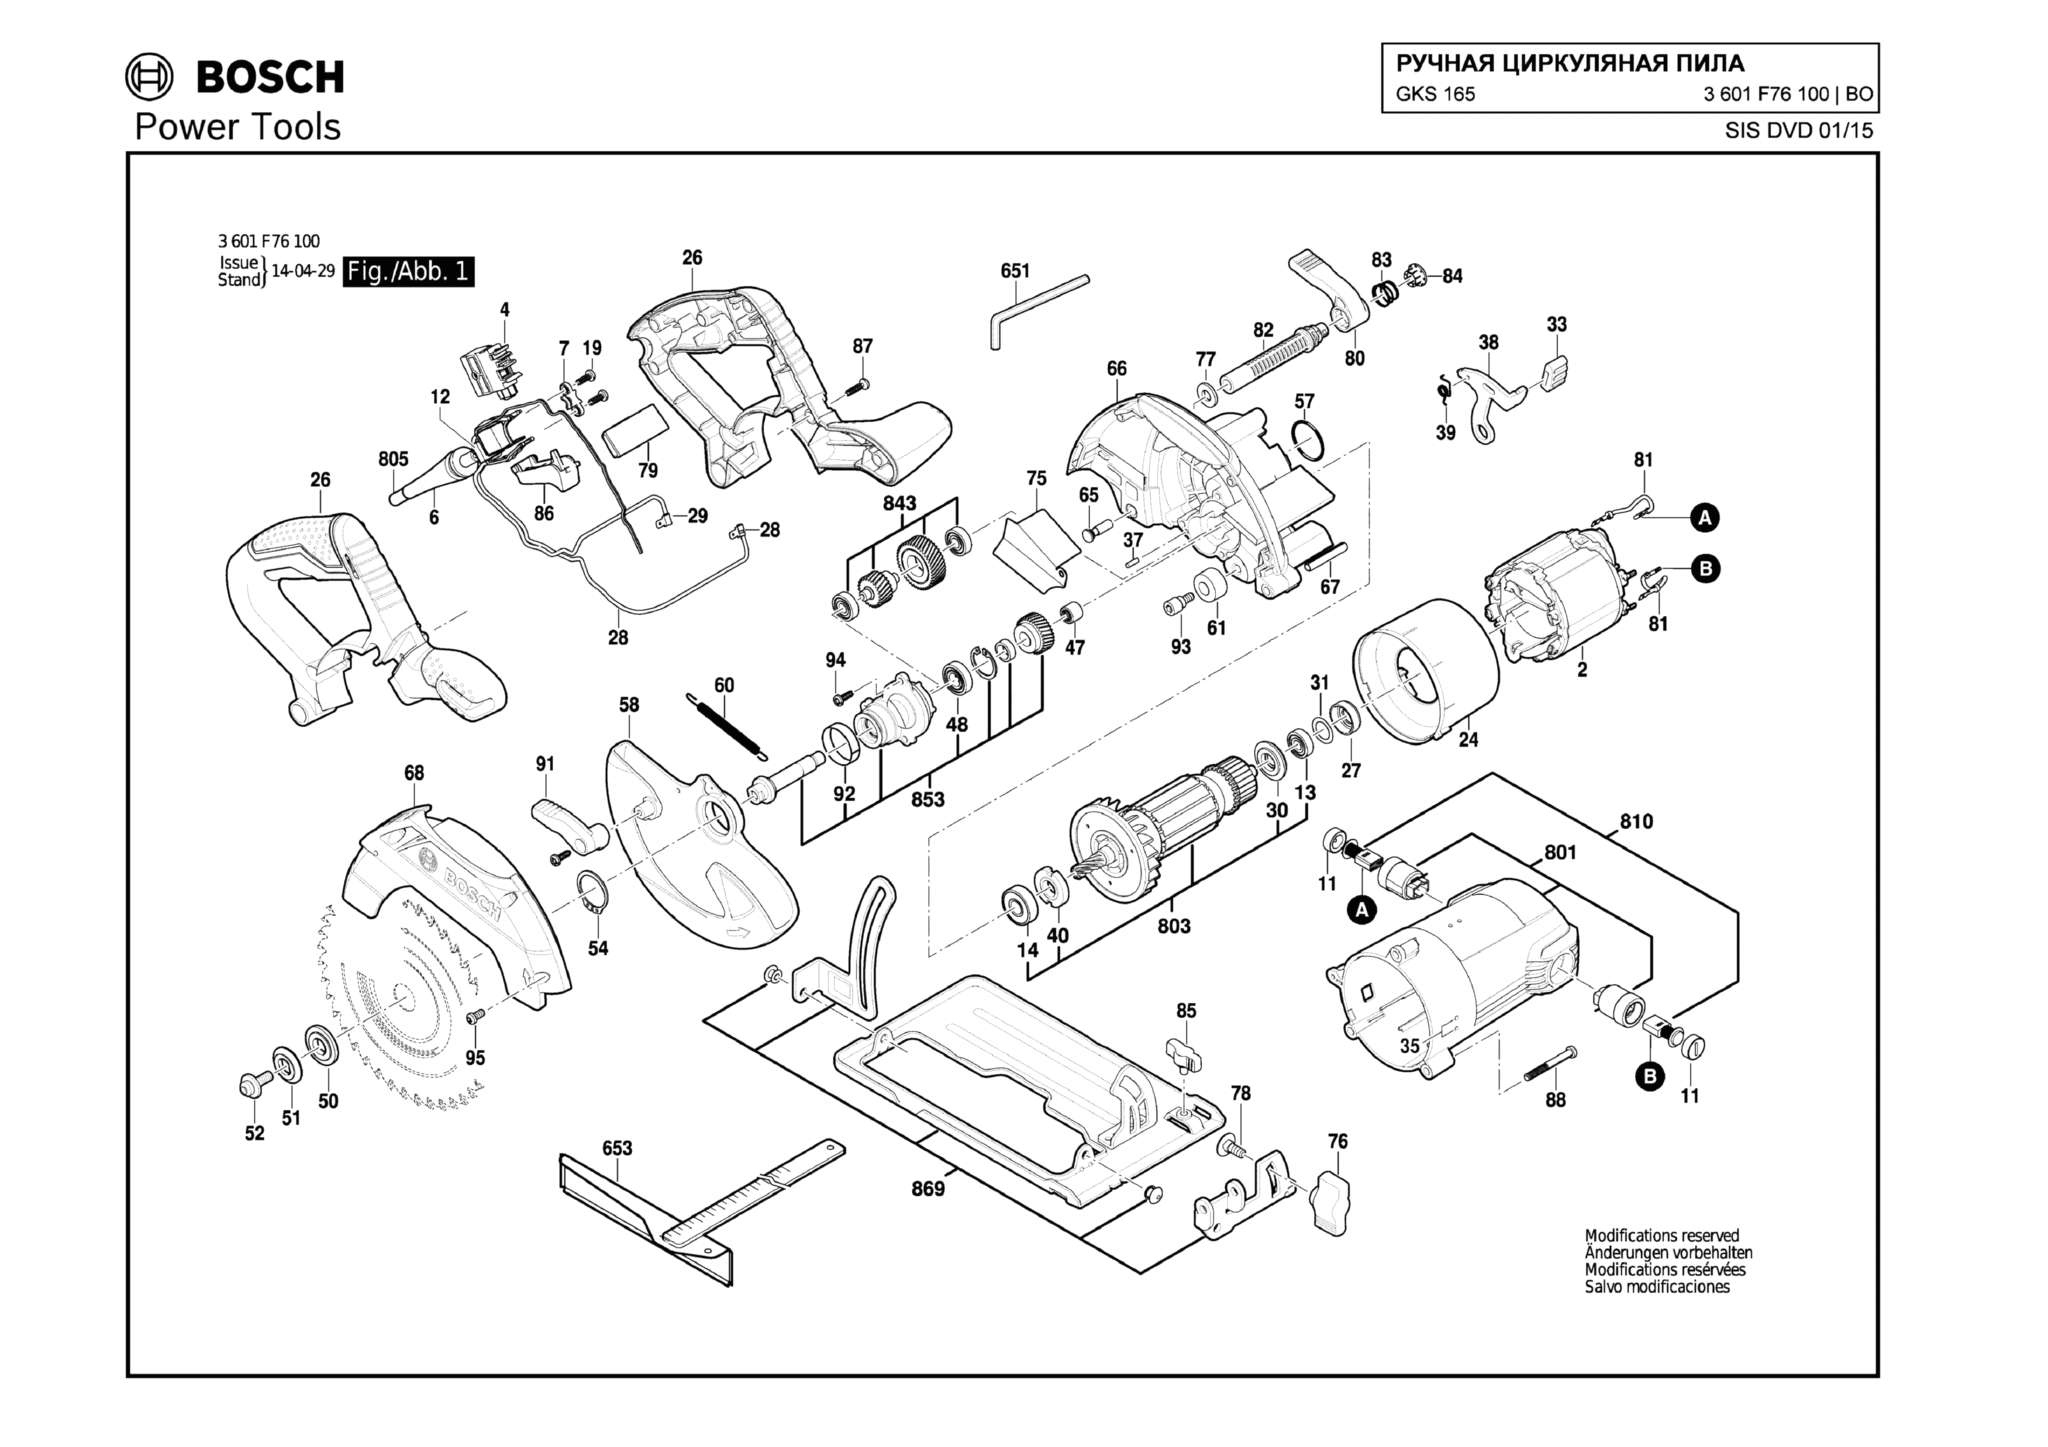 Запчасти, схема и деталировка Bosch GKS 165 (ТИП 3601F76100)